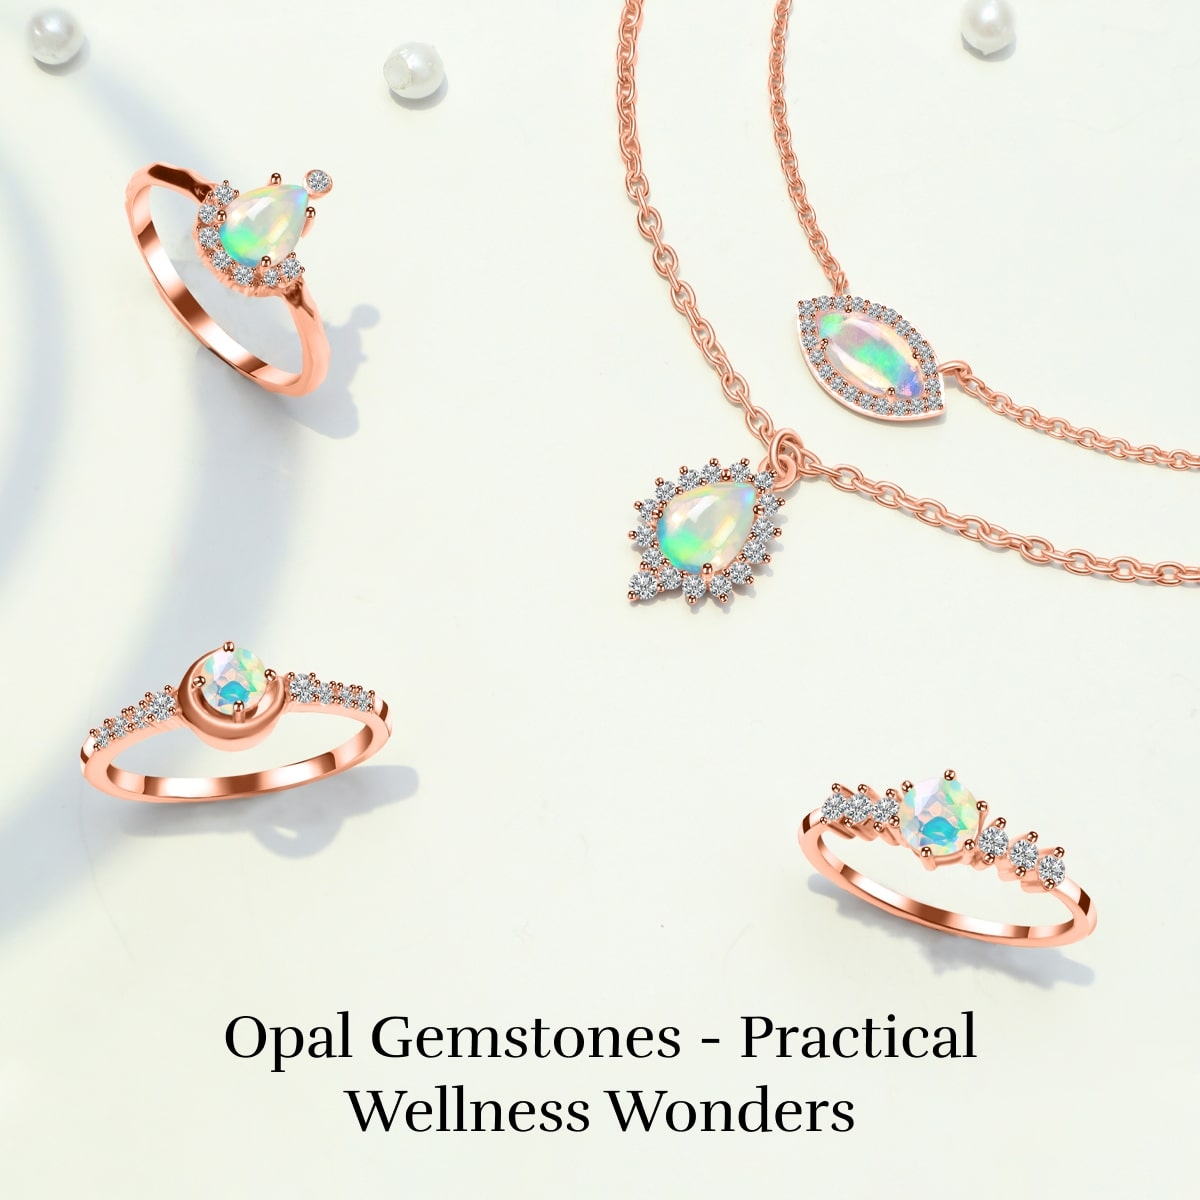 Benefits of Opal Gemstones